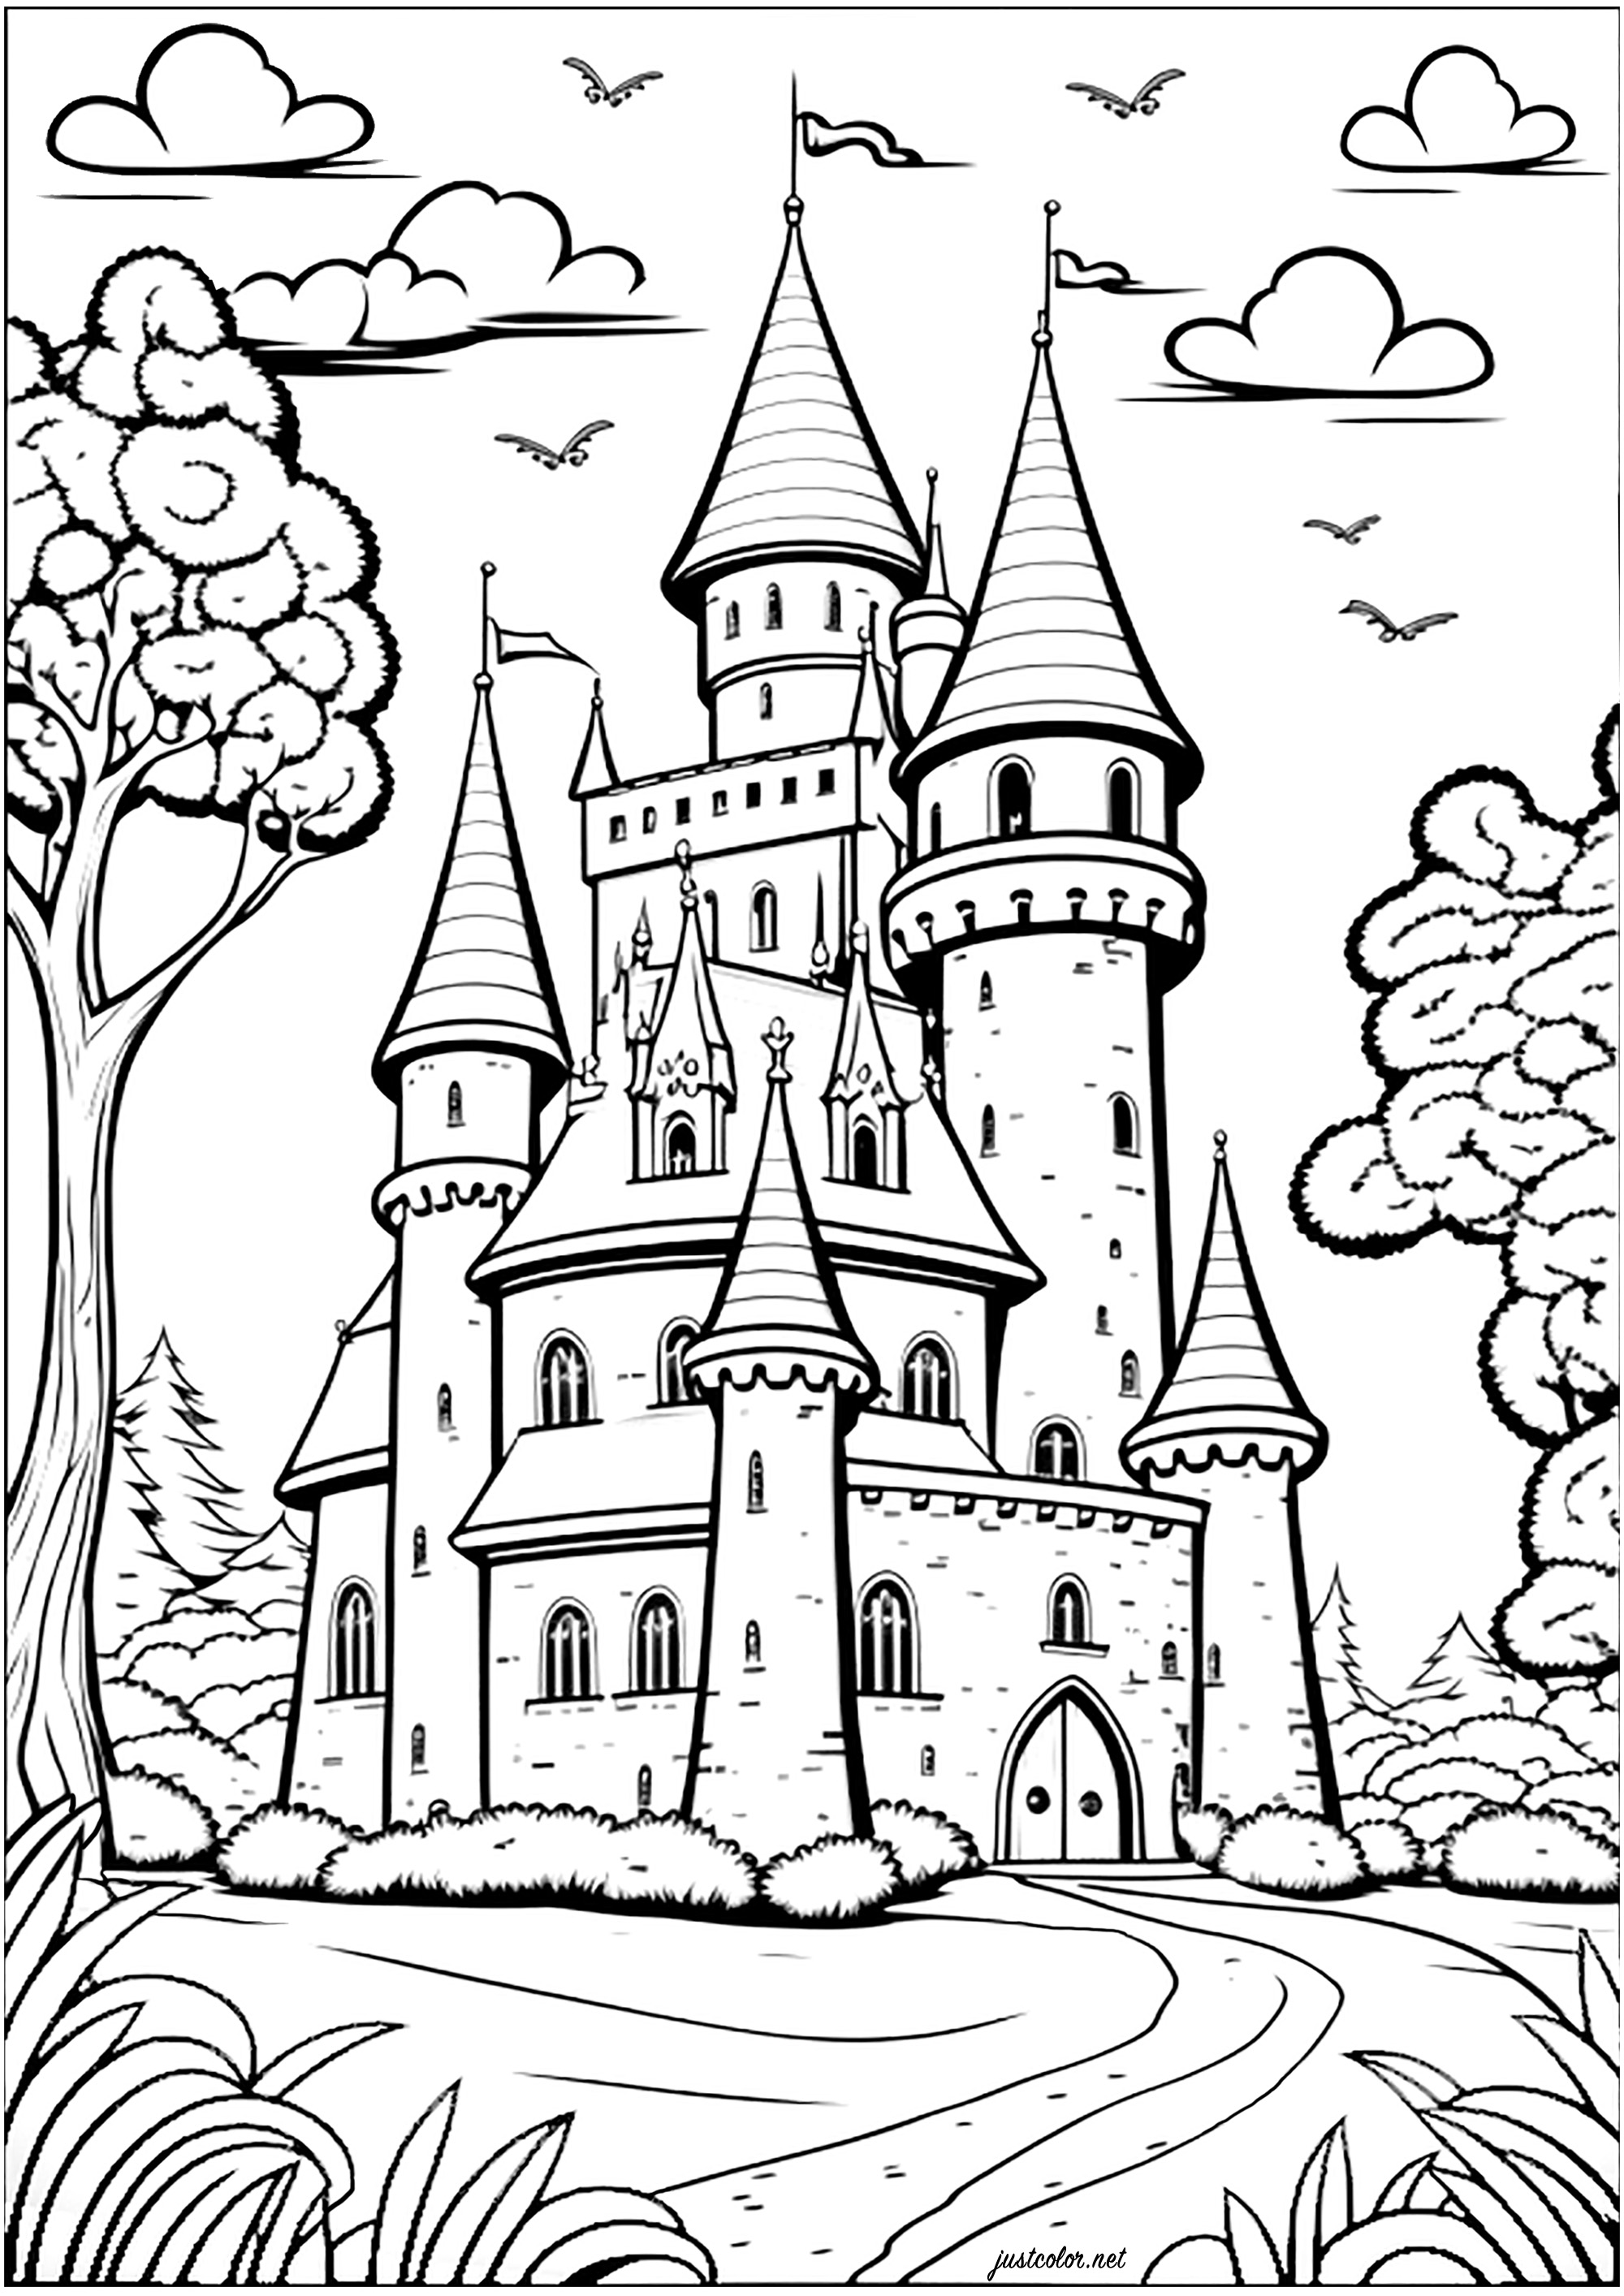 Coloriage d'un chateau d'un royaume imaginaire. Coloriez toutes ses tourelles, fenêtres, portes et murs pour un moment enchanté !